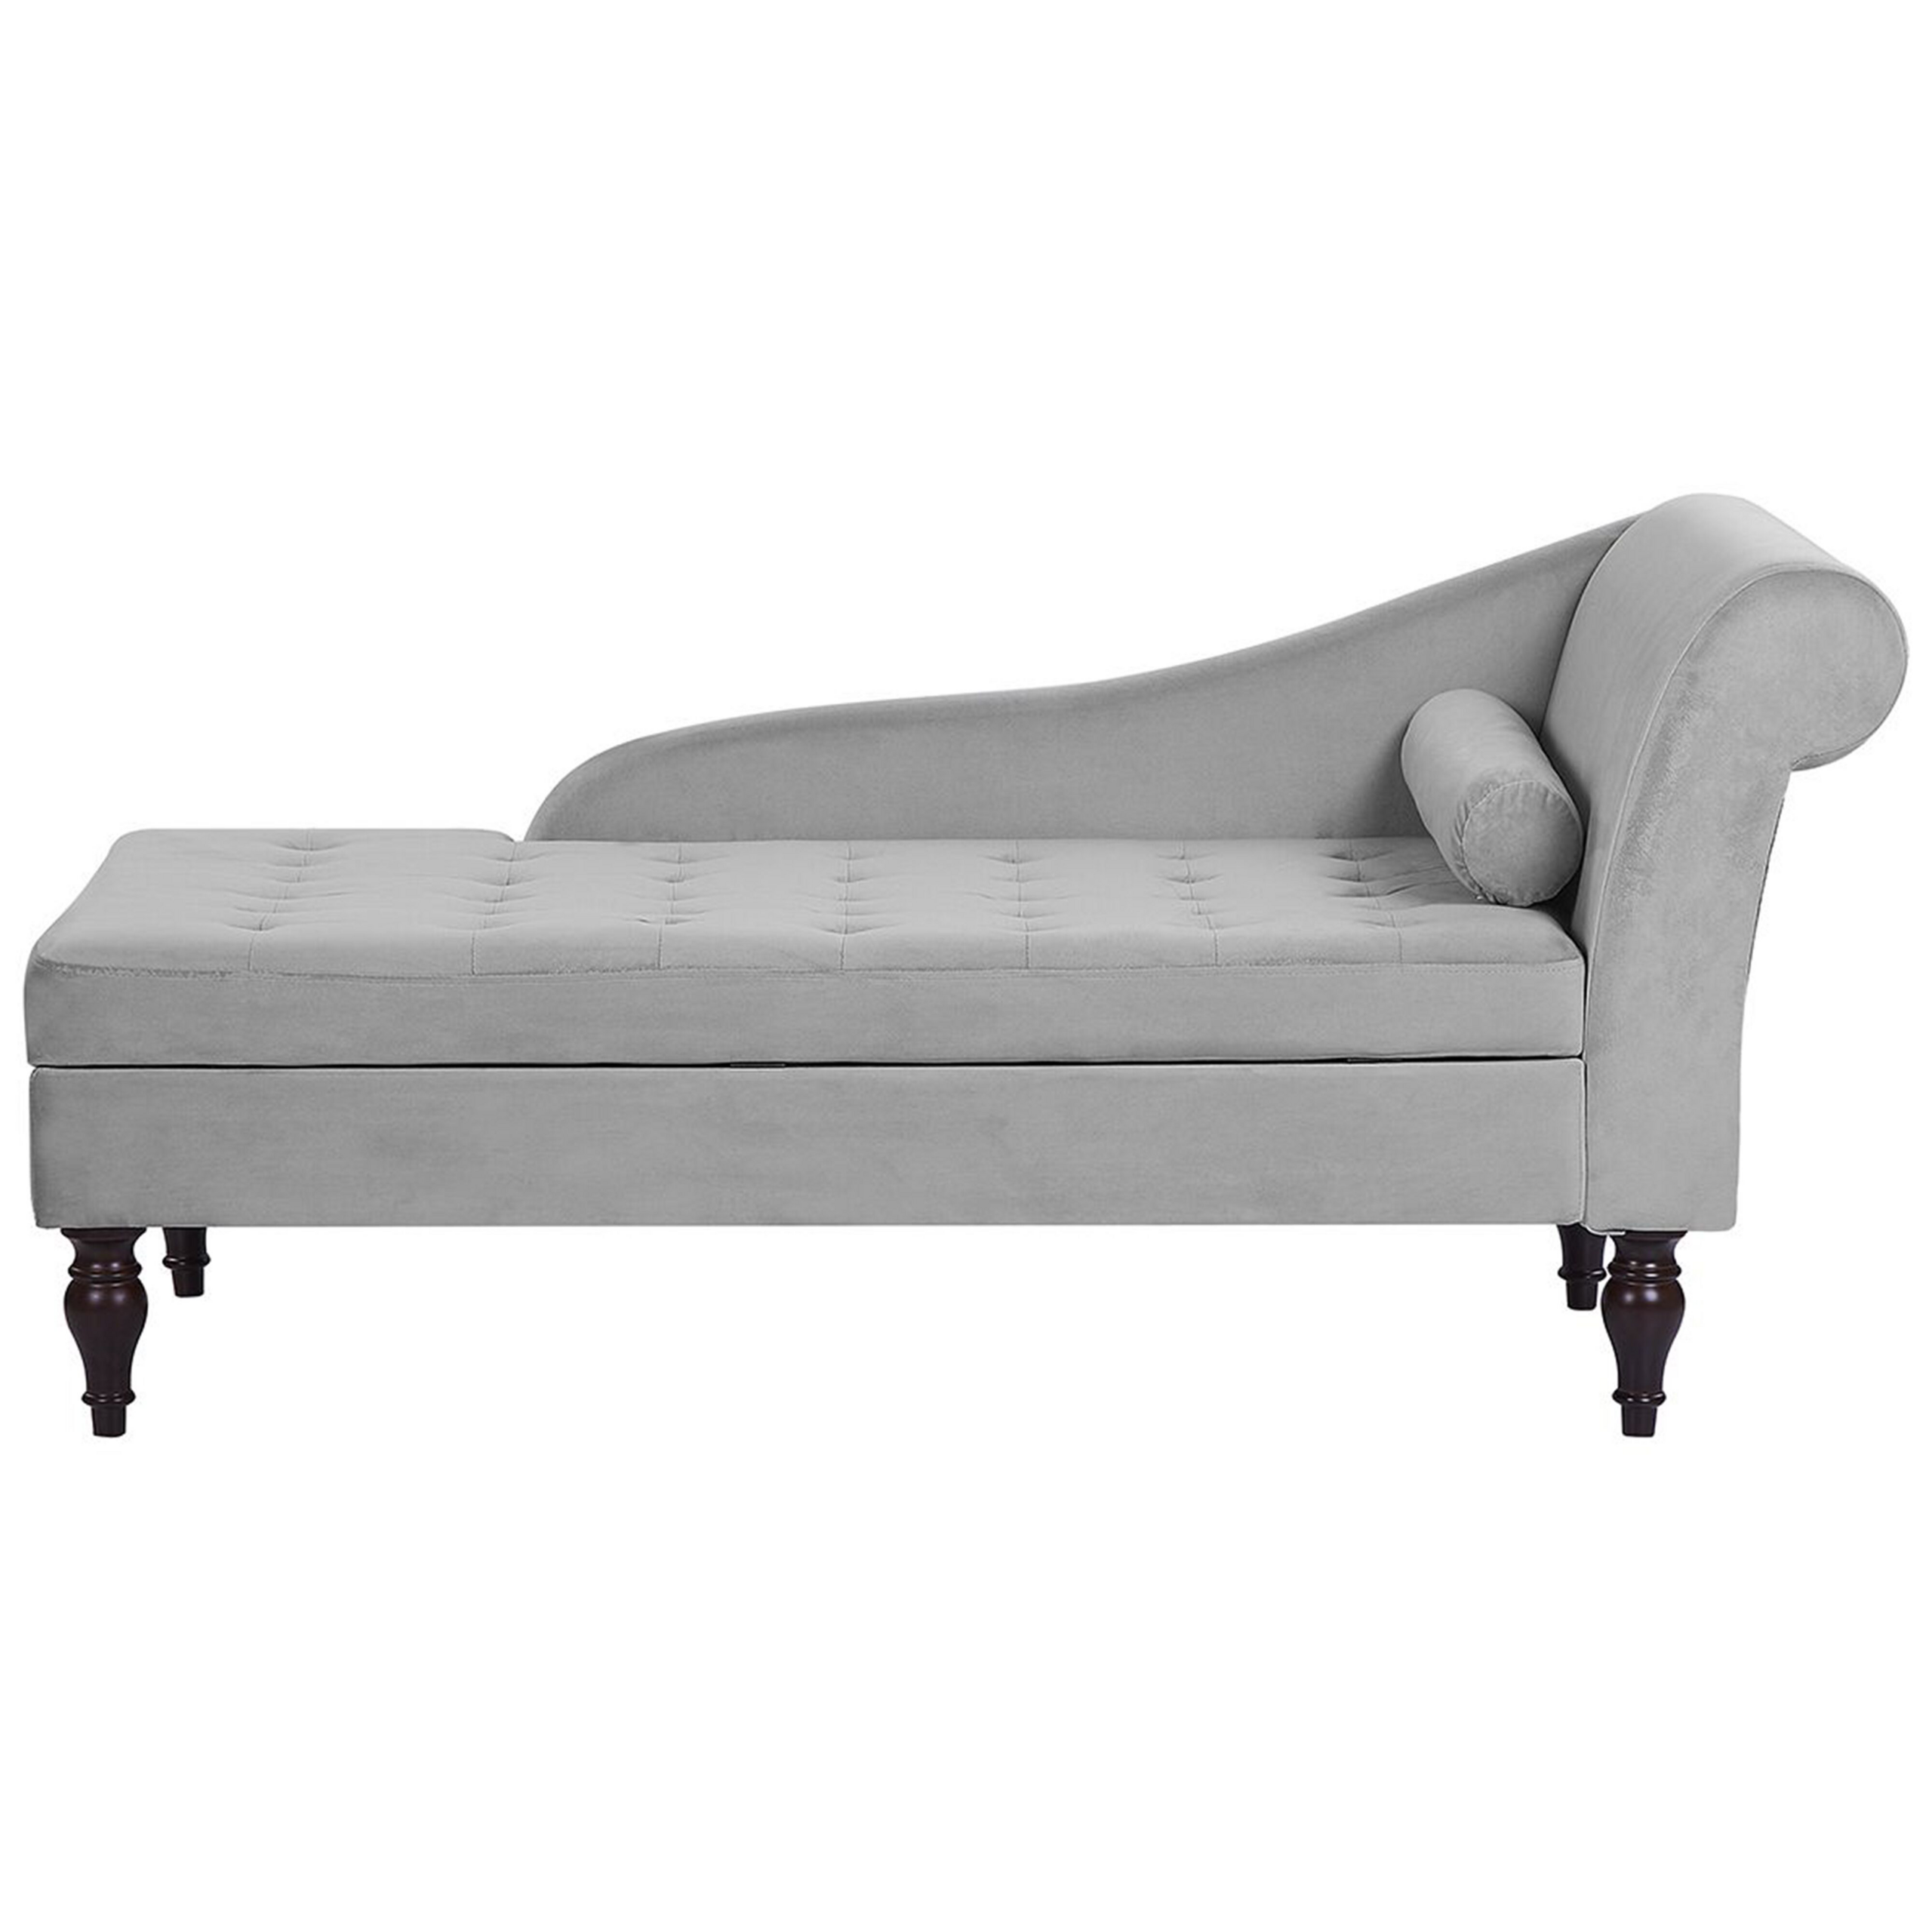 Beliani Chaise Lounge Light Grey Velvet Upholstery Black Legs Modern Design